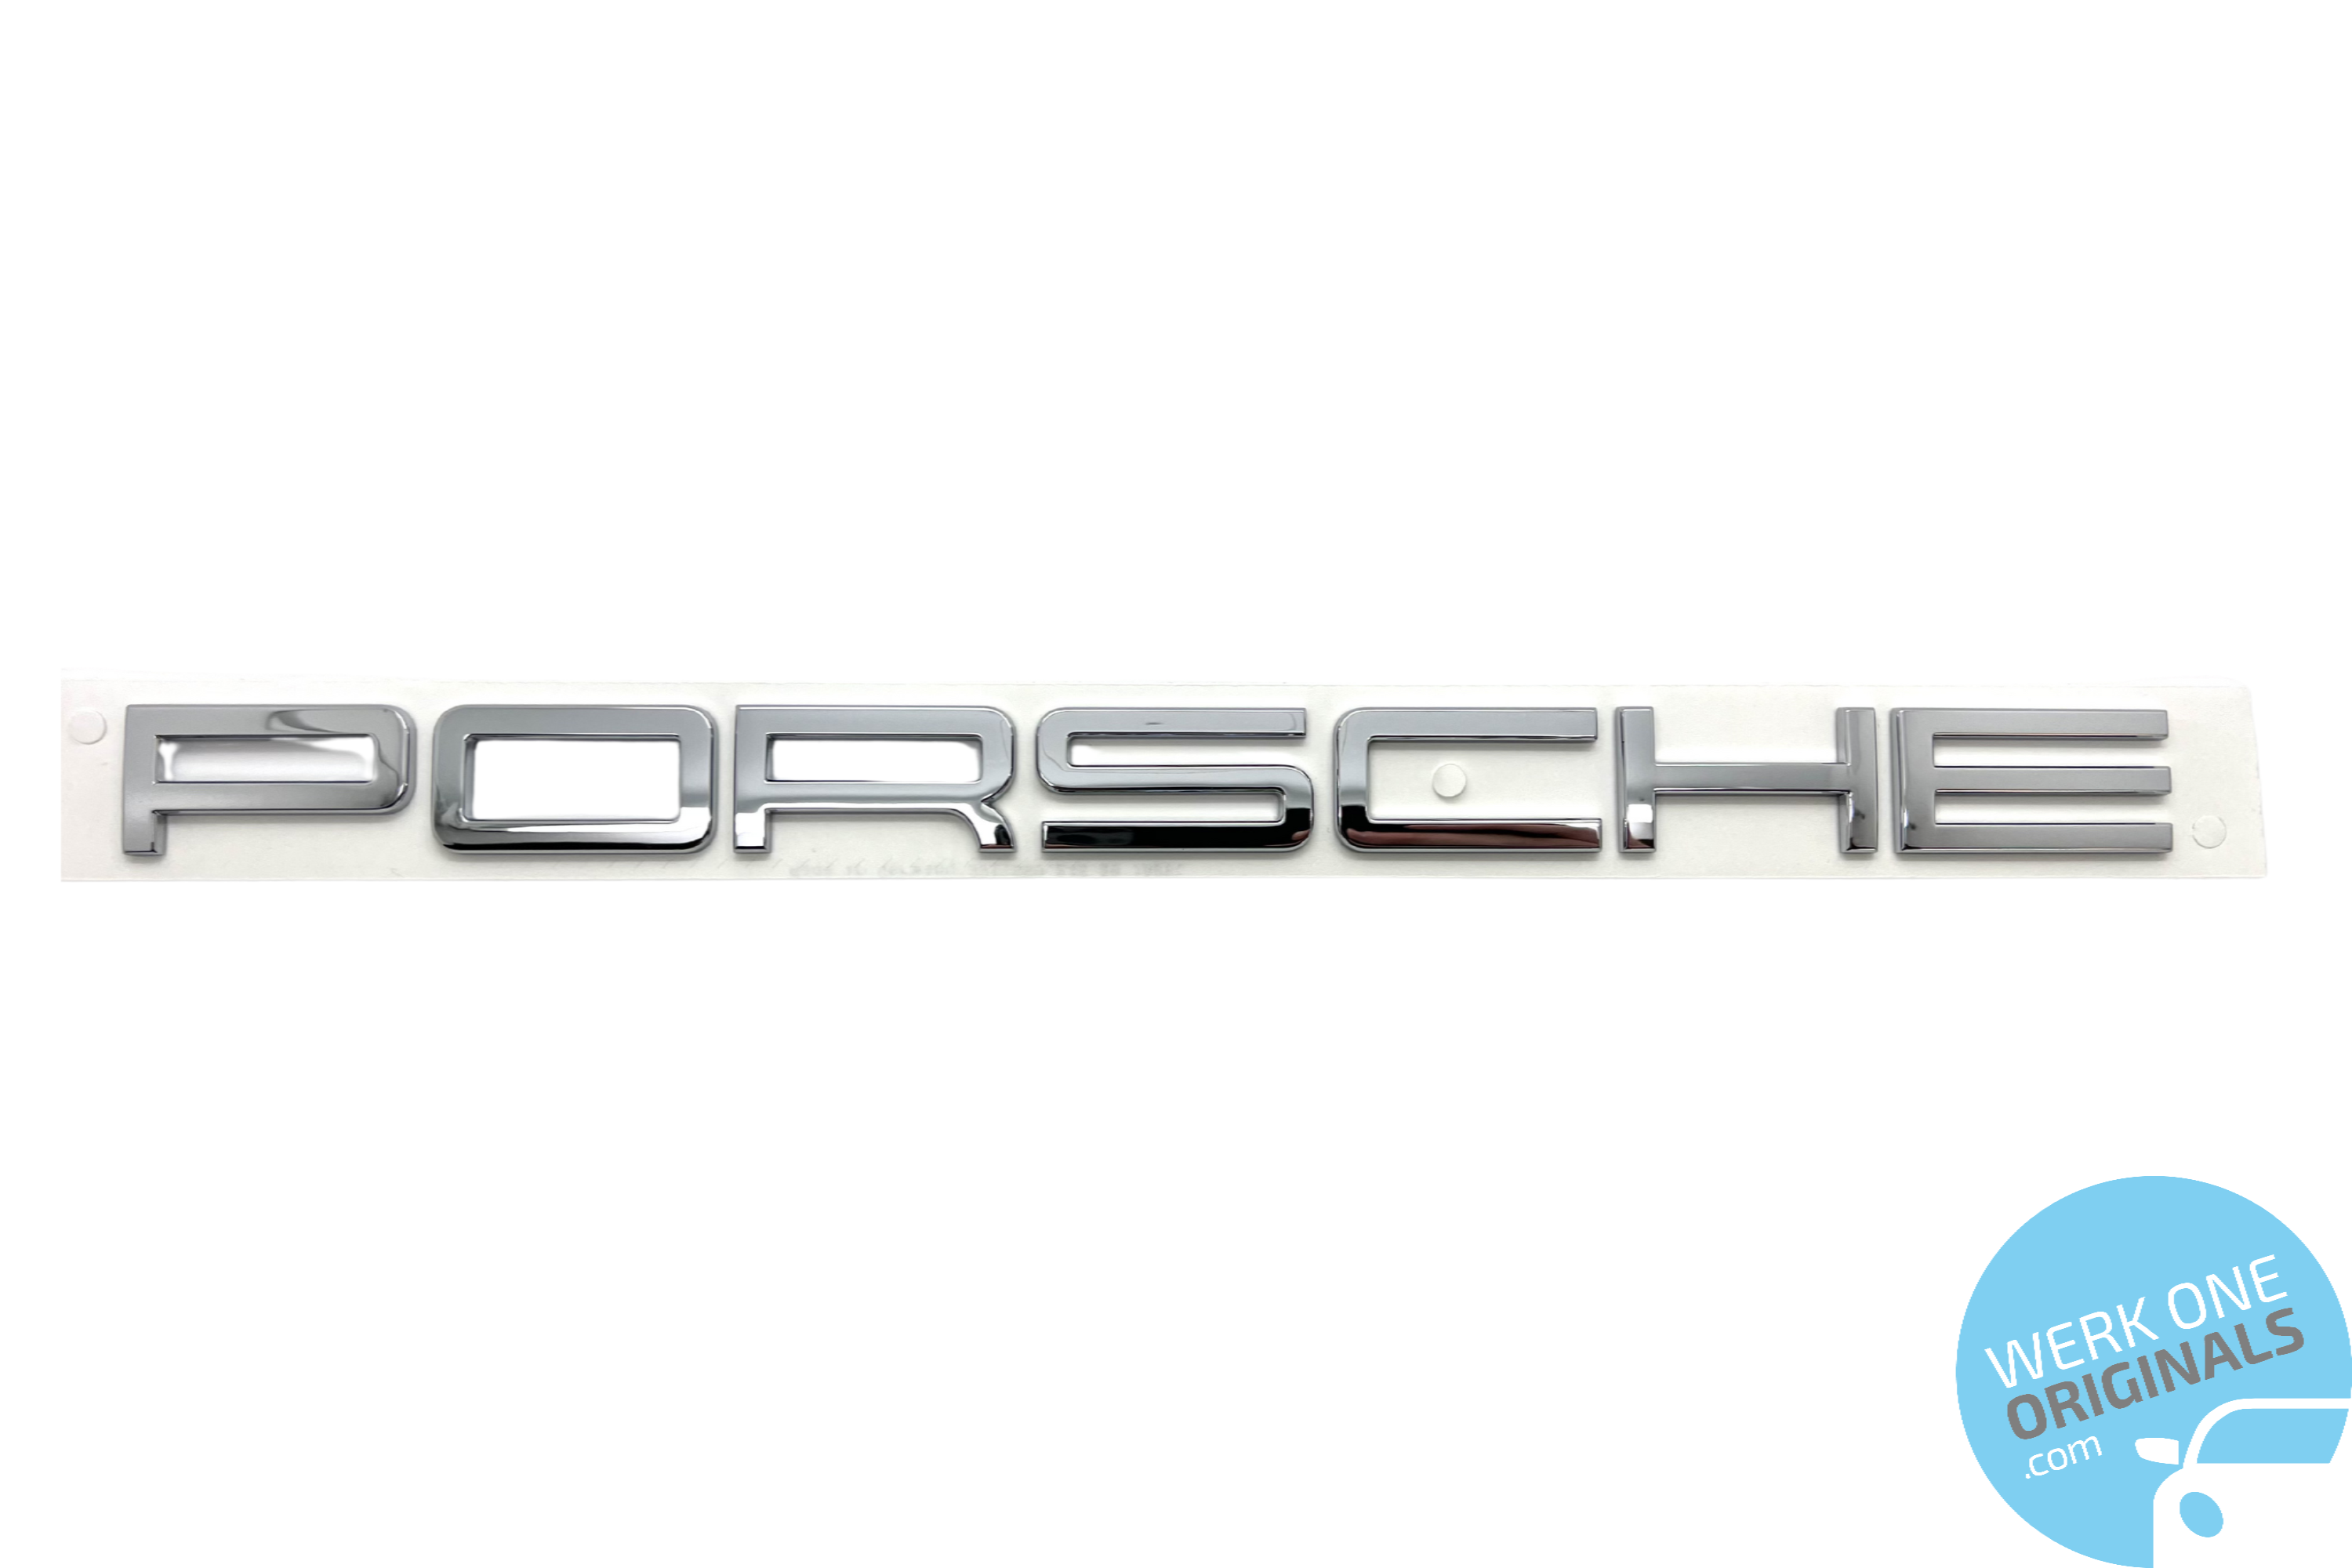 Porsche Official 'Porsche 911 Carrera' Rear Badge Decal in Chrome Silver for 911 Type 991 Carrera Models